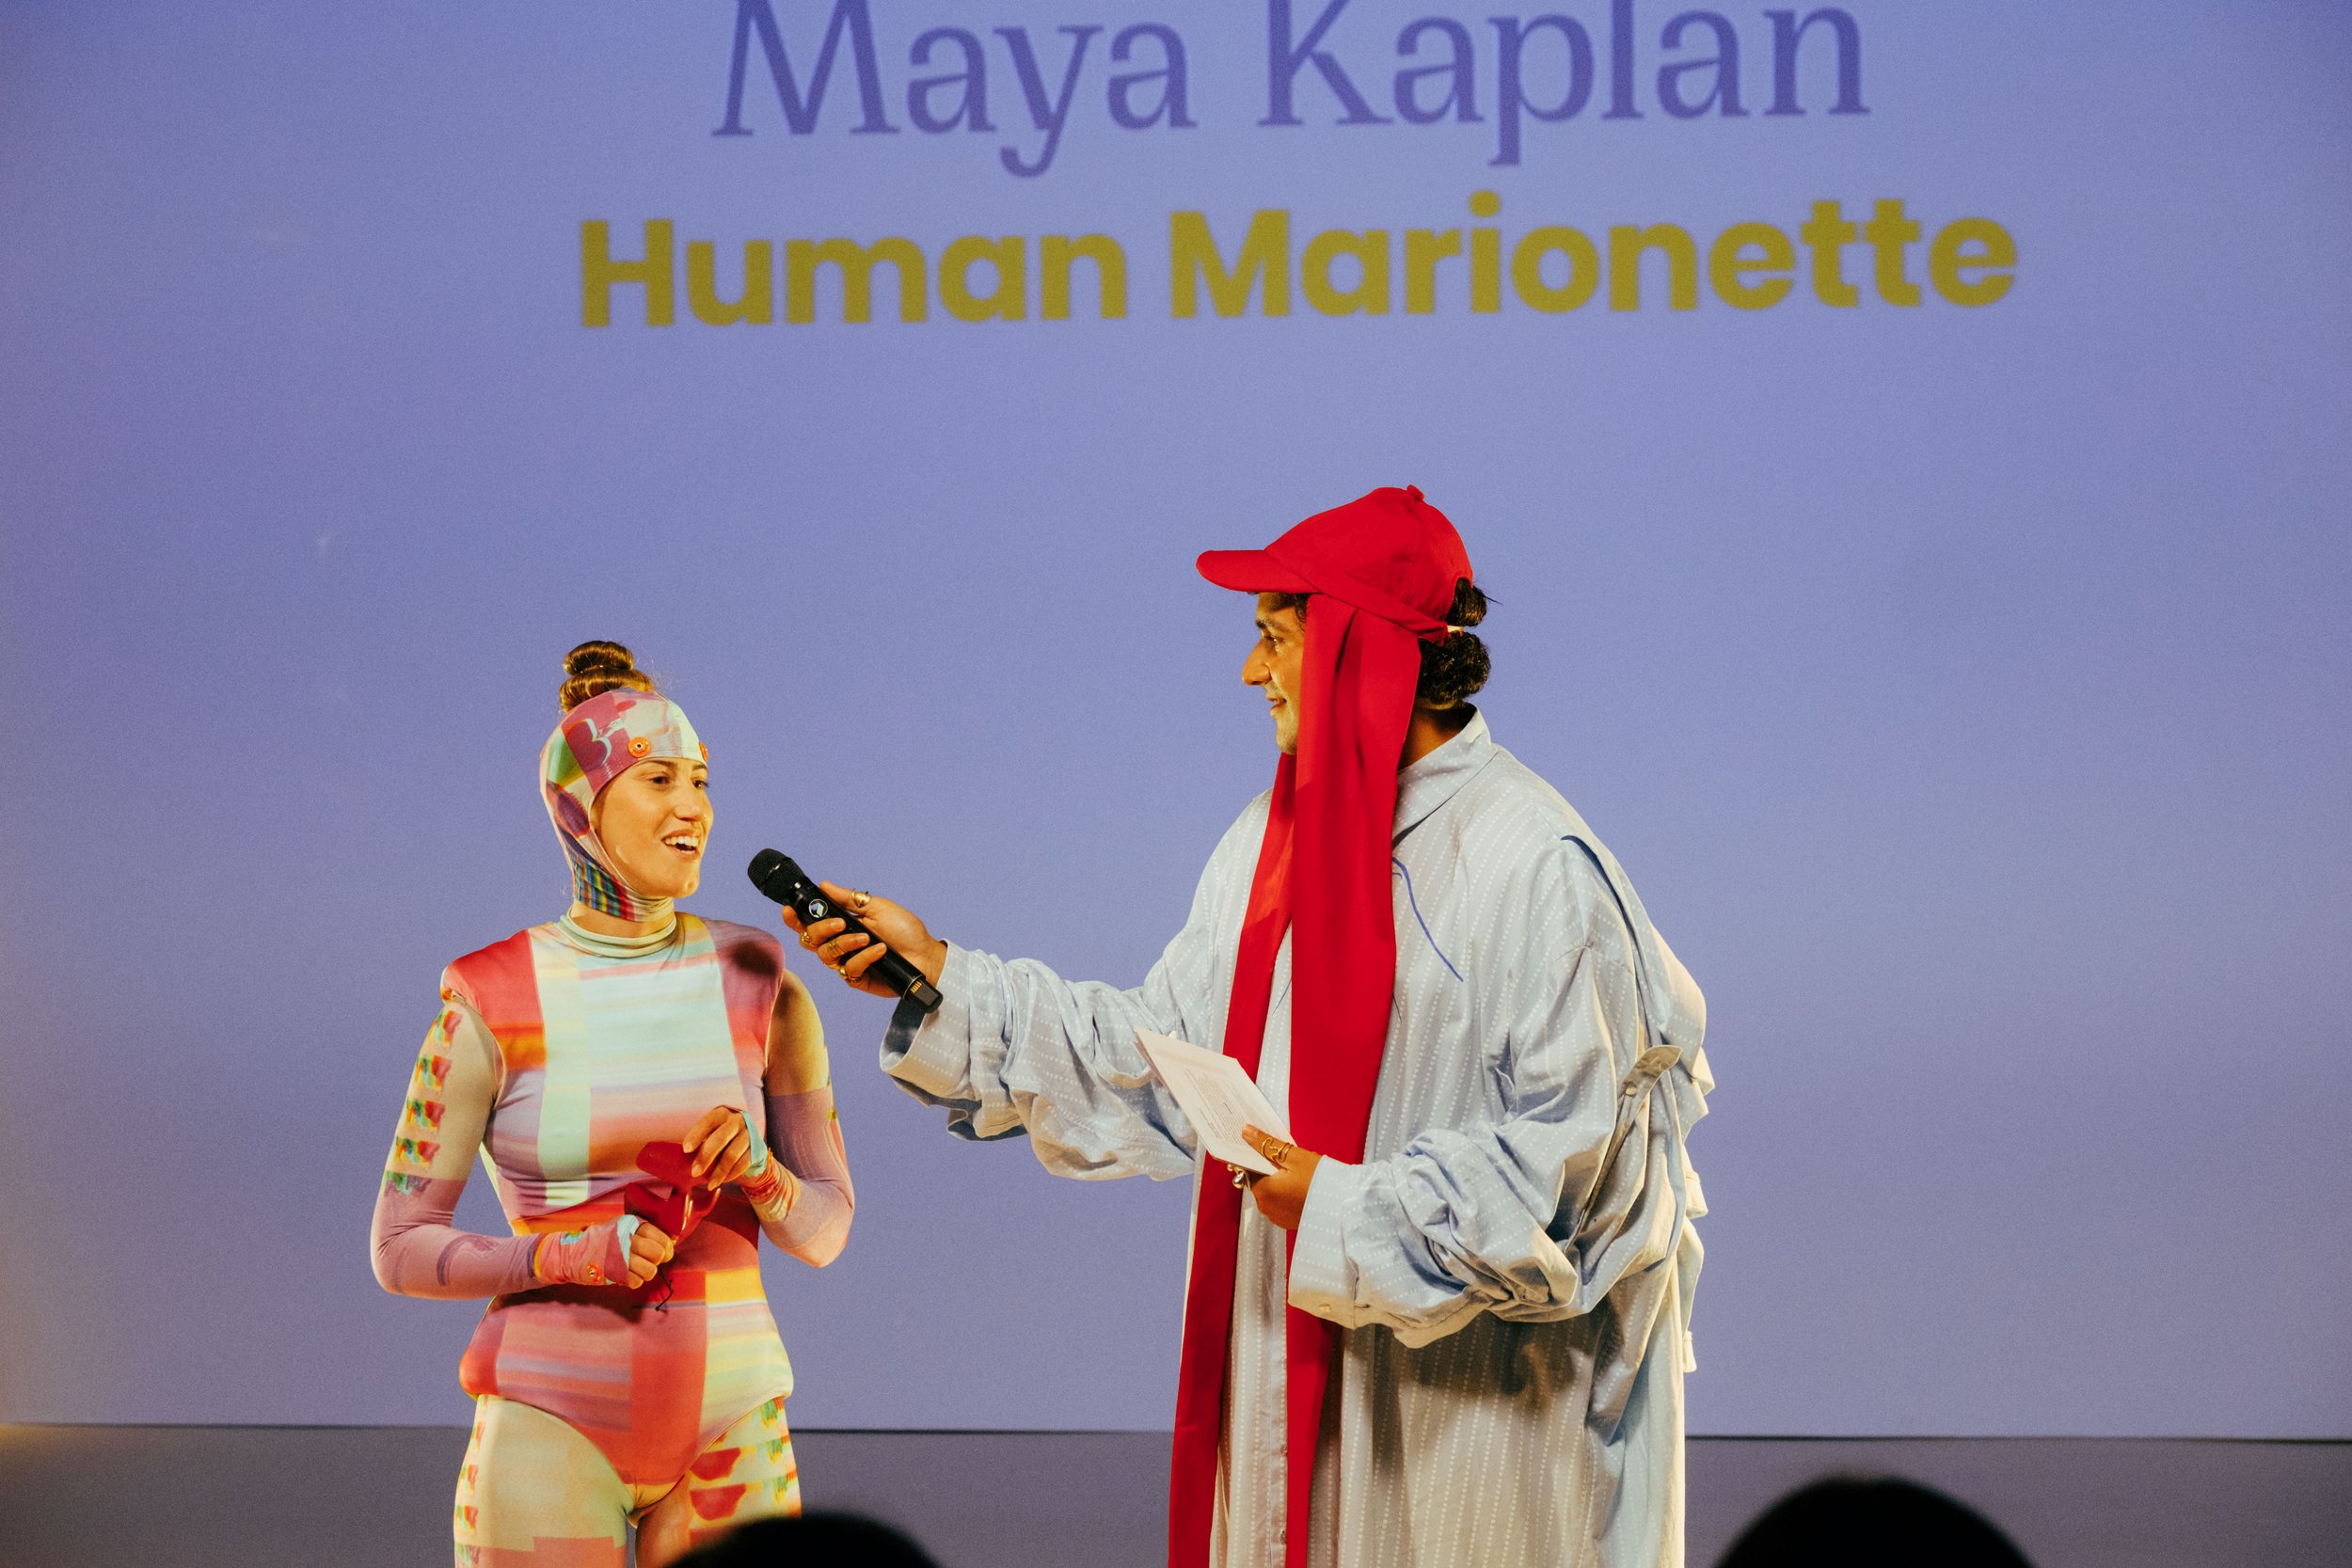 Maya Kaplan